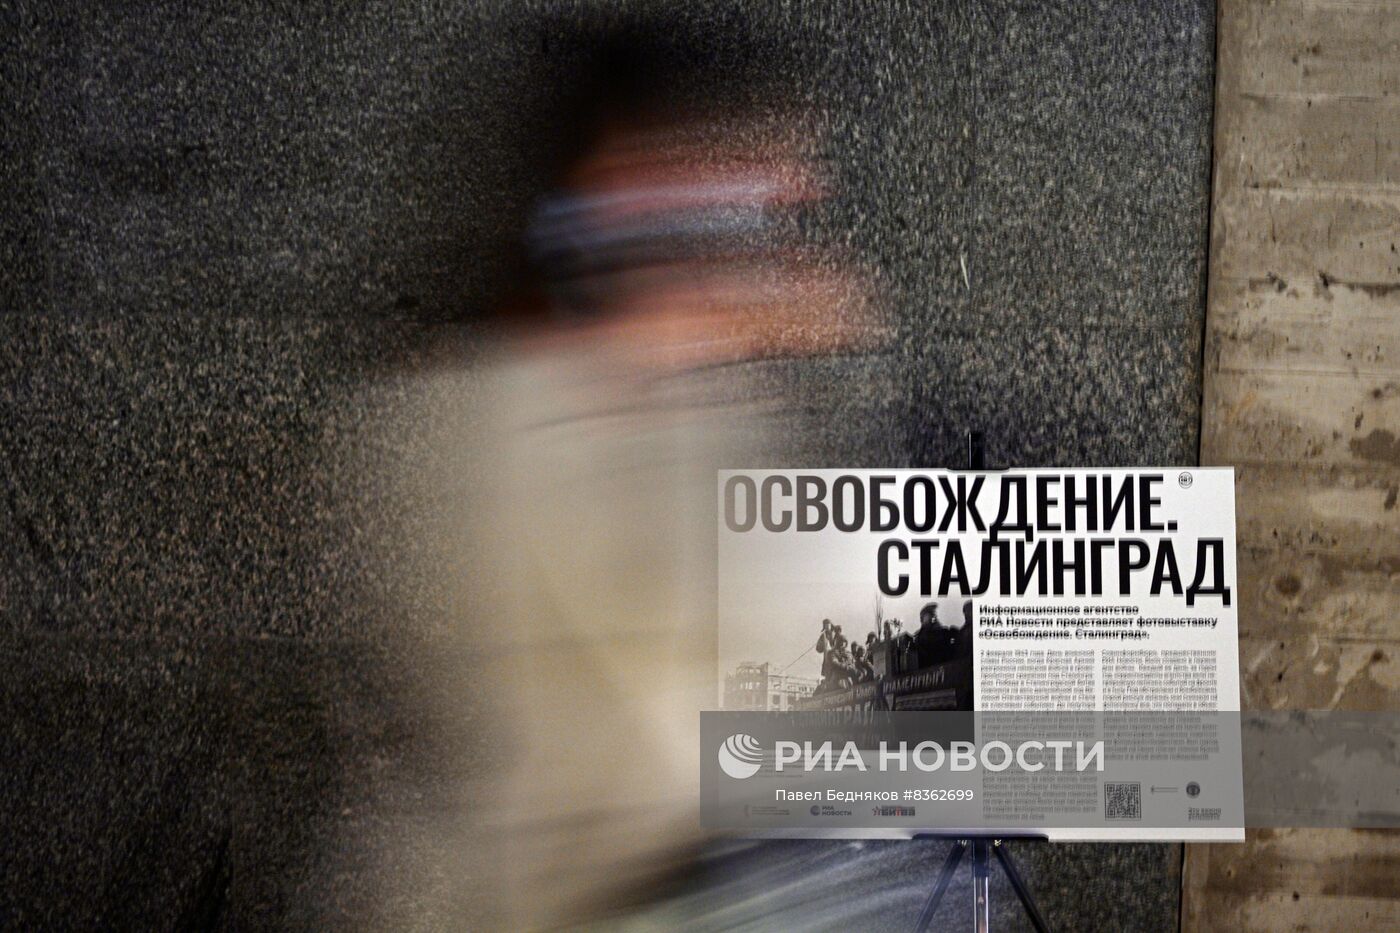 Открытие фотовыставки "Освобождение. Сталинград"